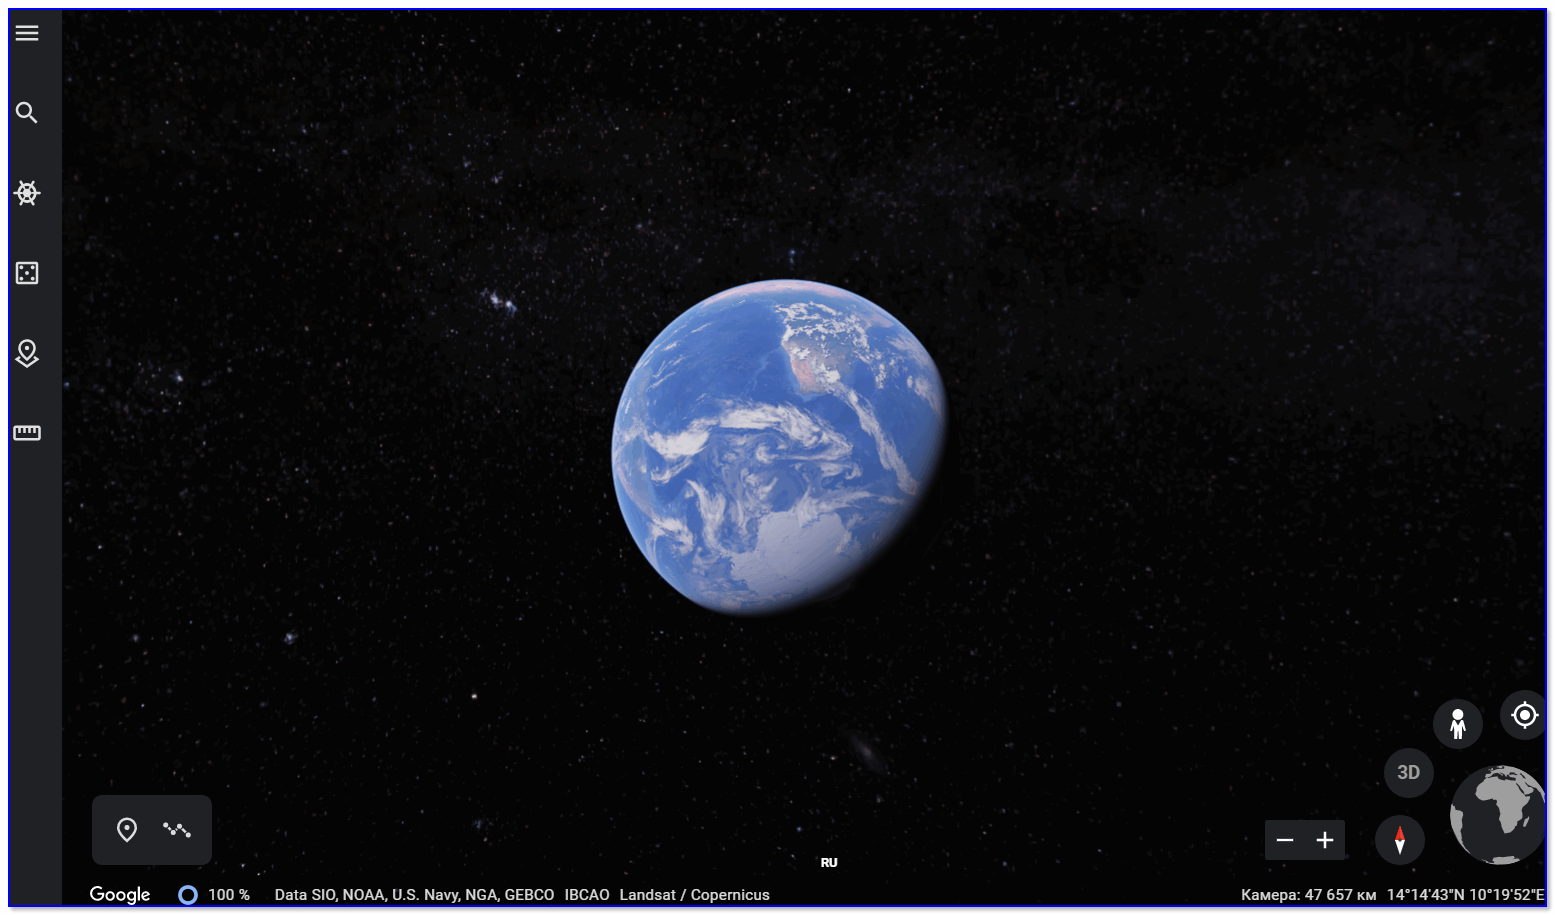 Google Earth — снимок земли из космоса (это 3D, планету можно вращать!)